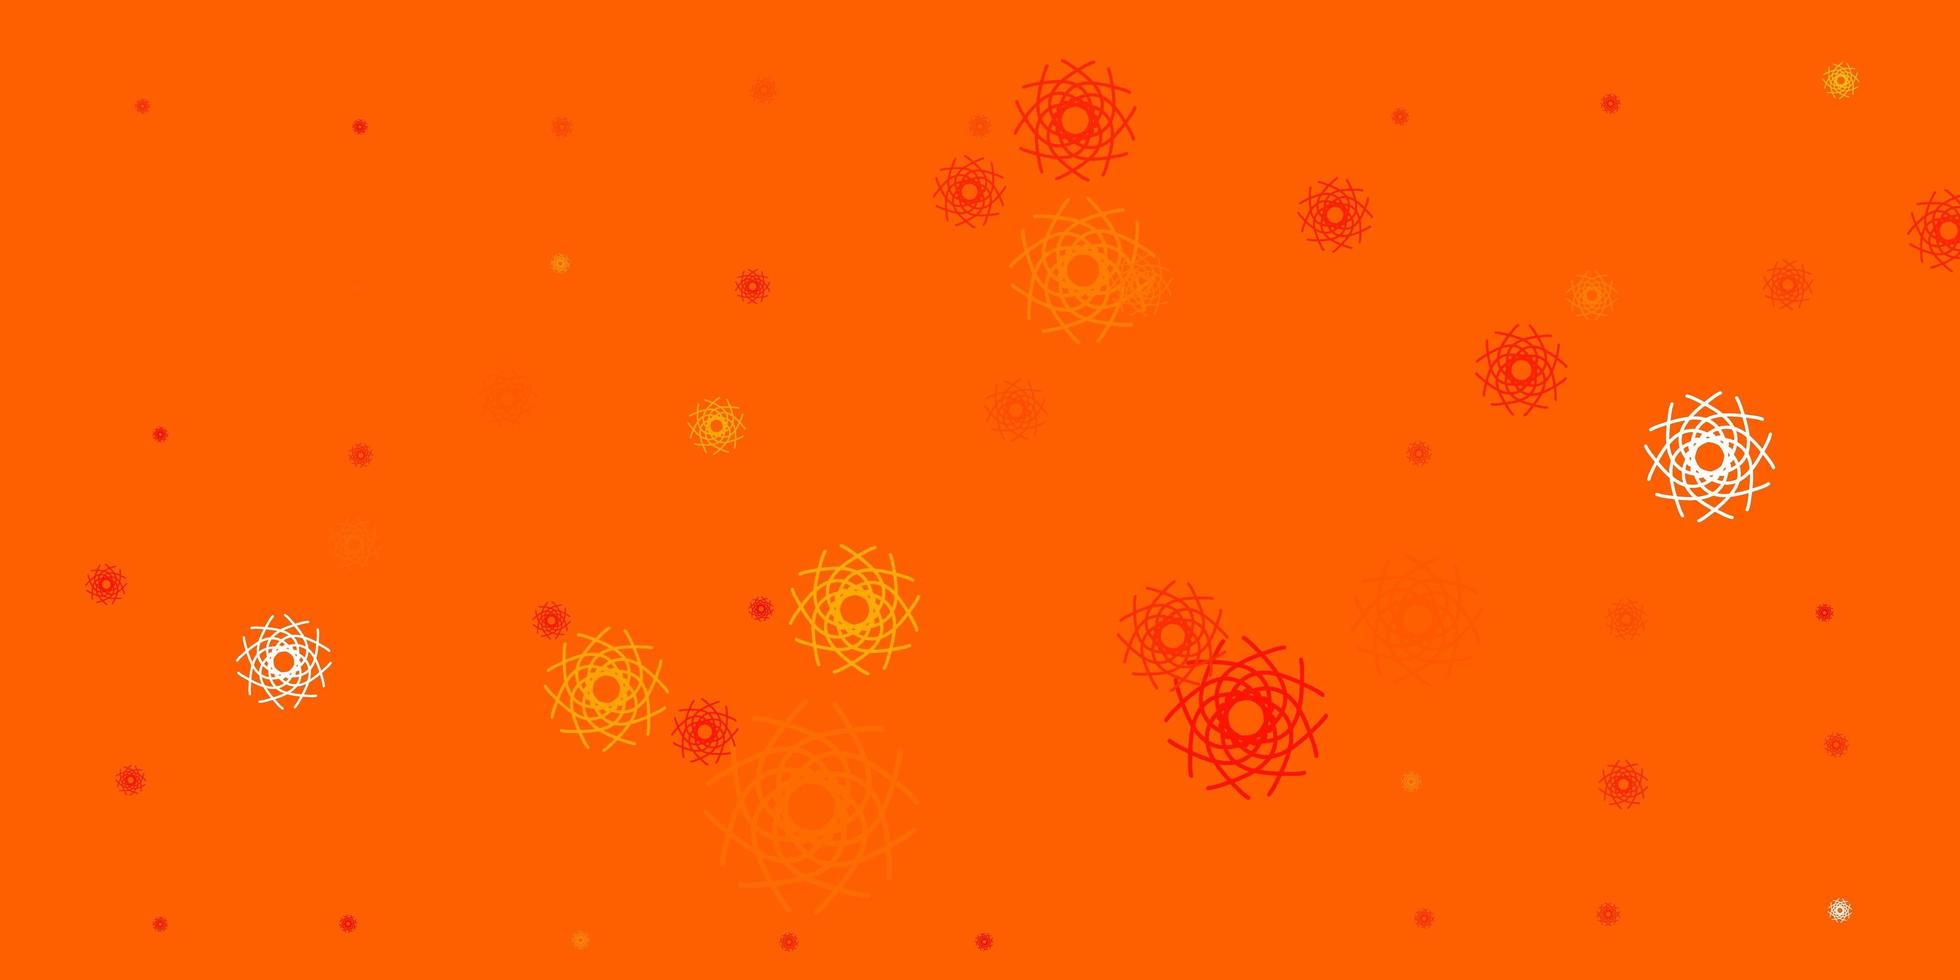 fond de vecteur orange clair avec des formes aléatoires.